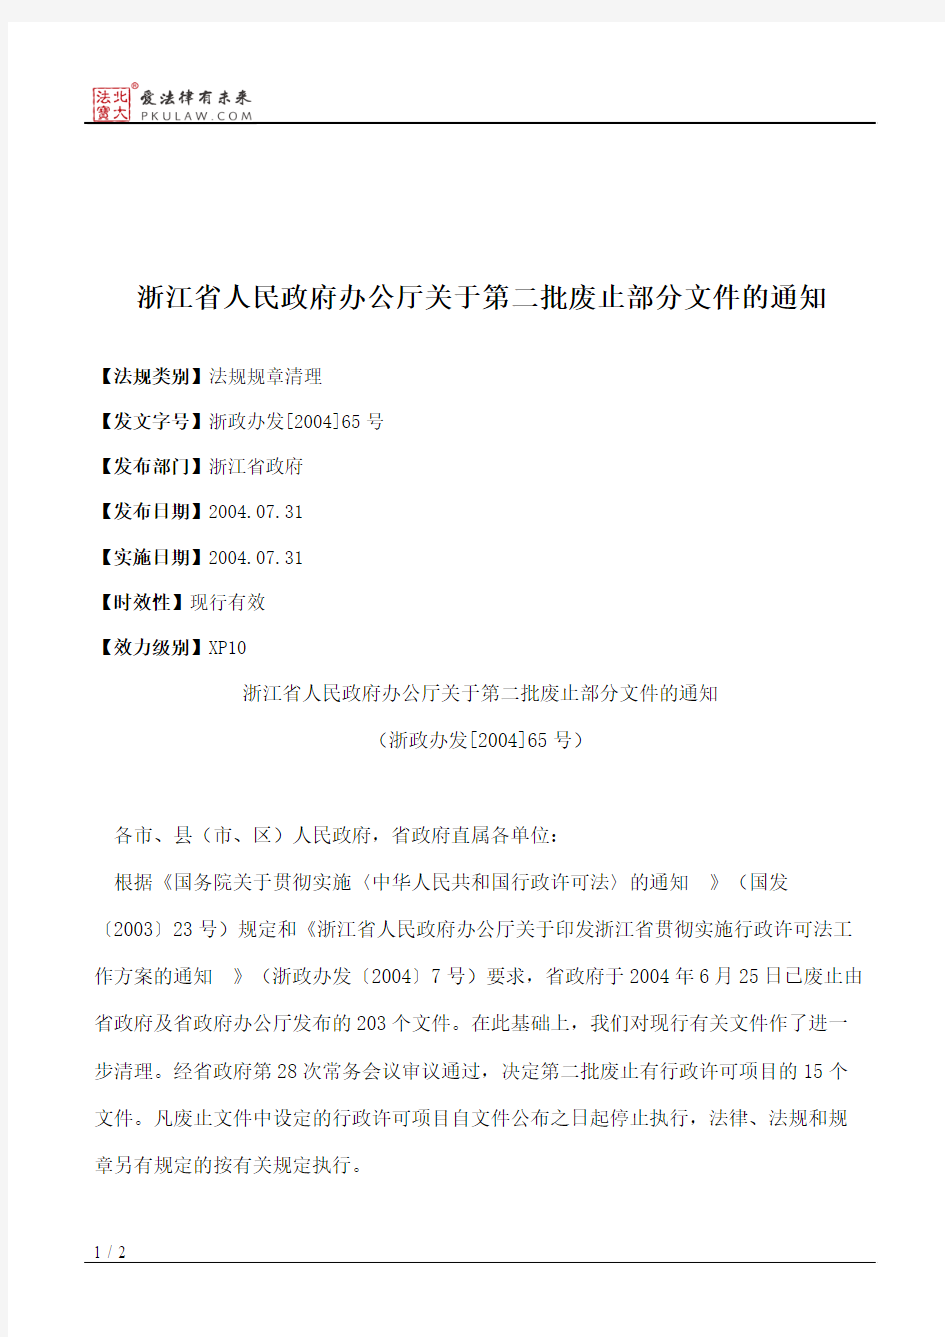 浙江省人民政府办公厅关于第二批废止部分文件的通知